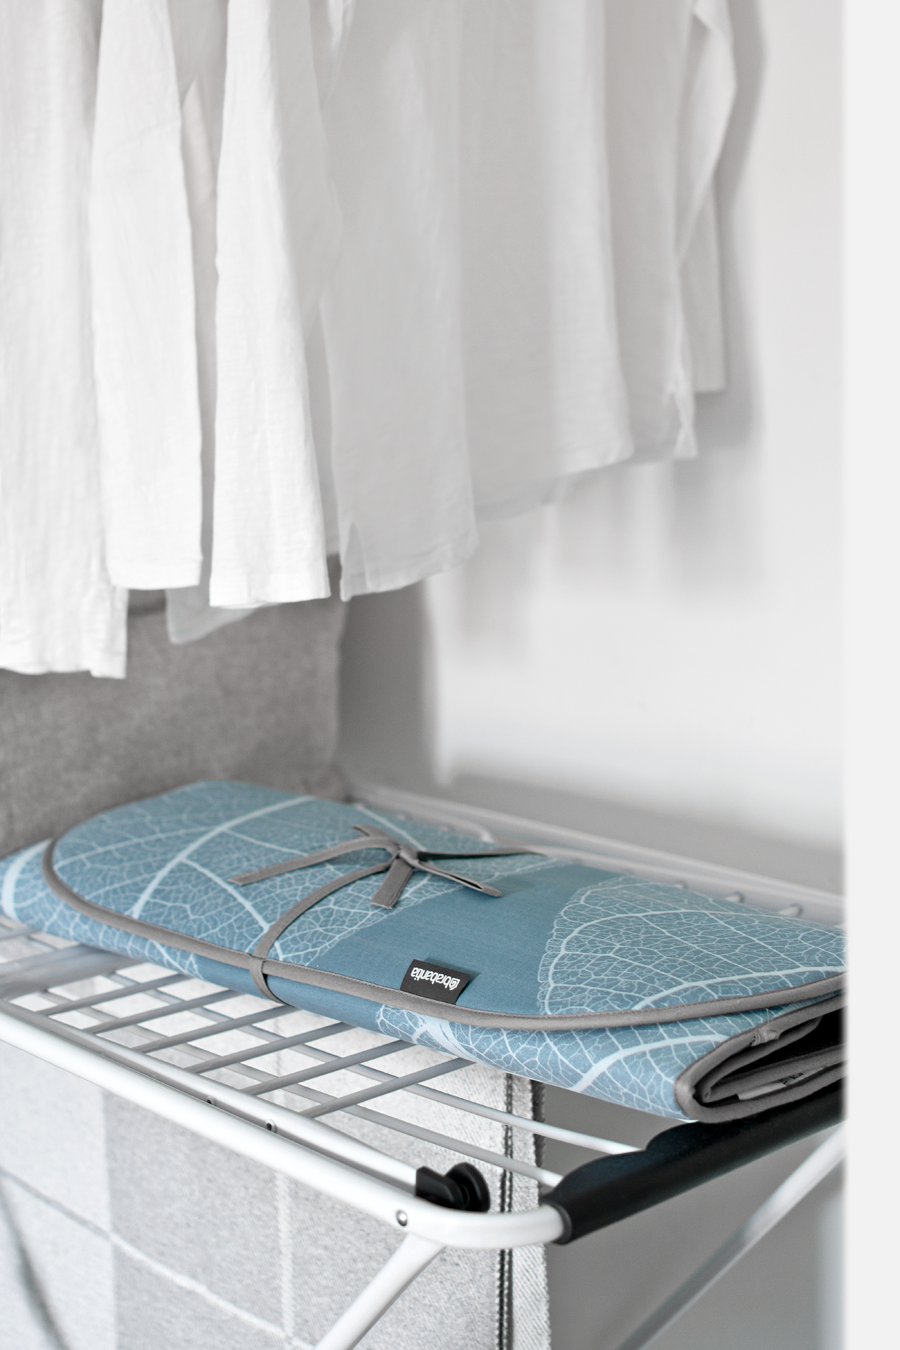 Organize a small ironing and laundry area / Organizar una pequeña zona de lavado y planchado